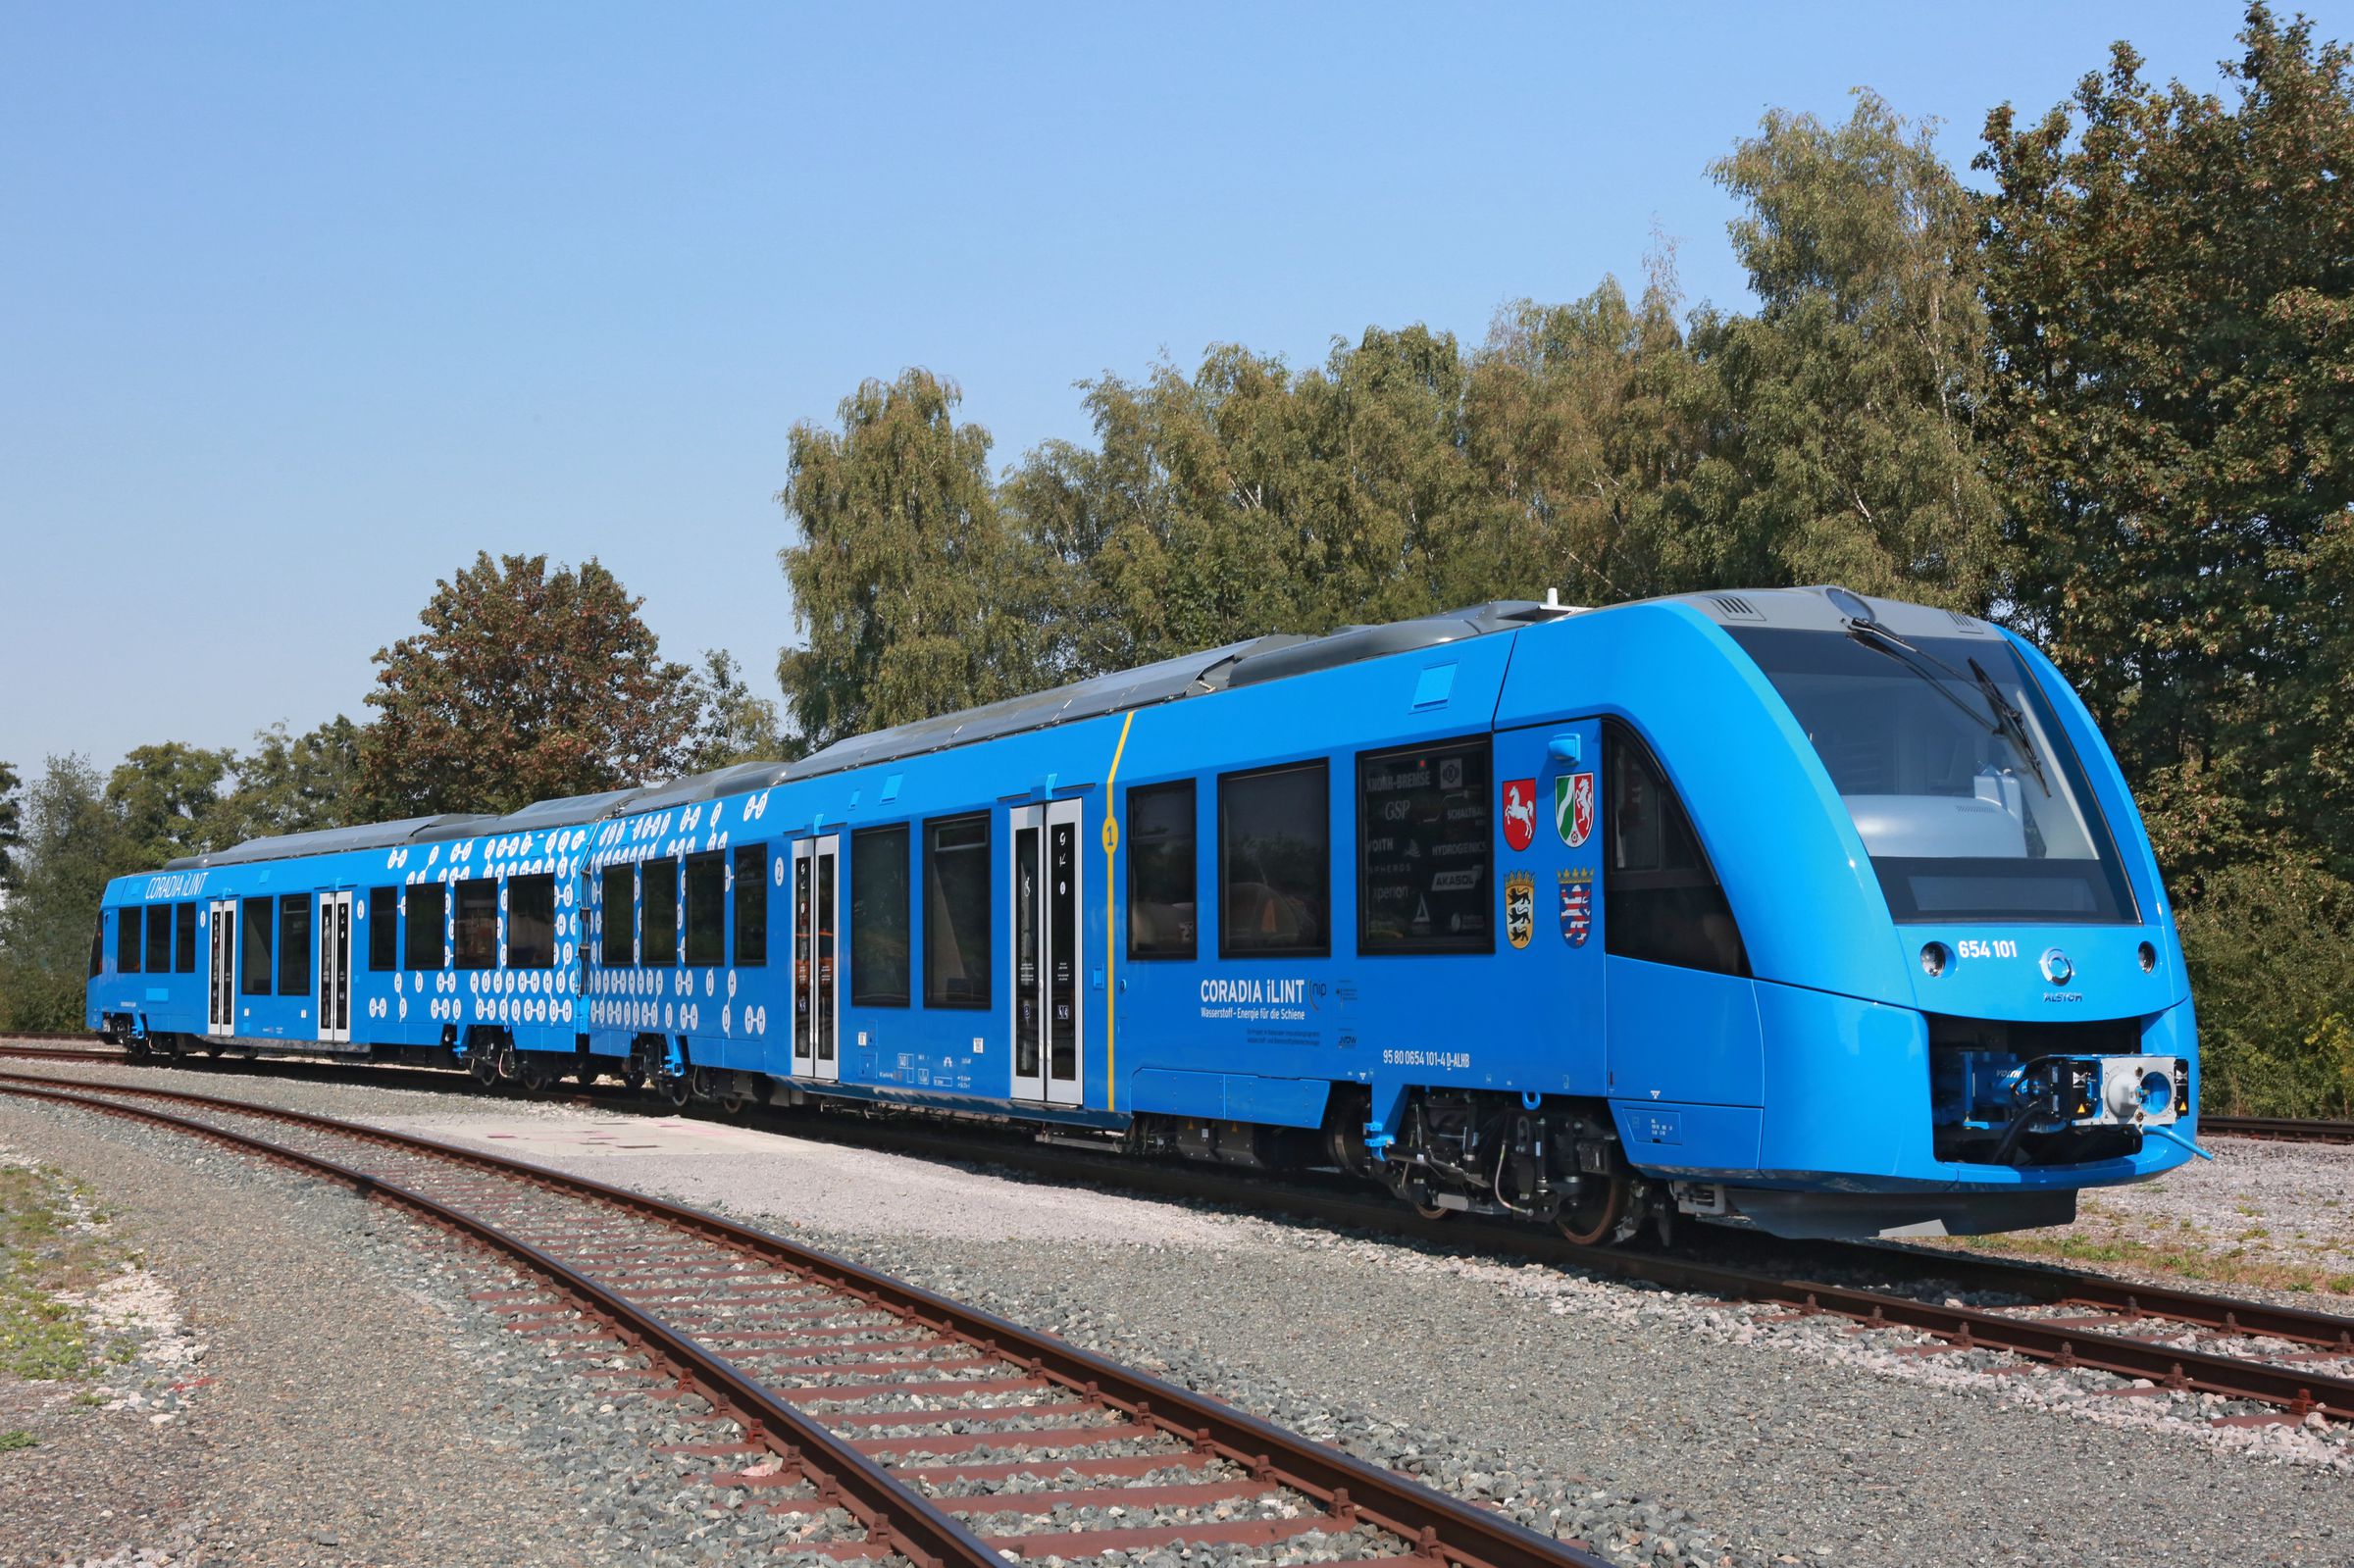 Coradia iLint hydrogen train